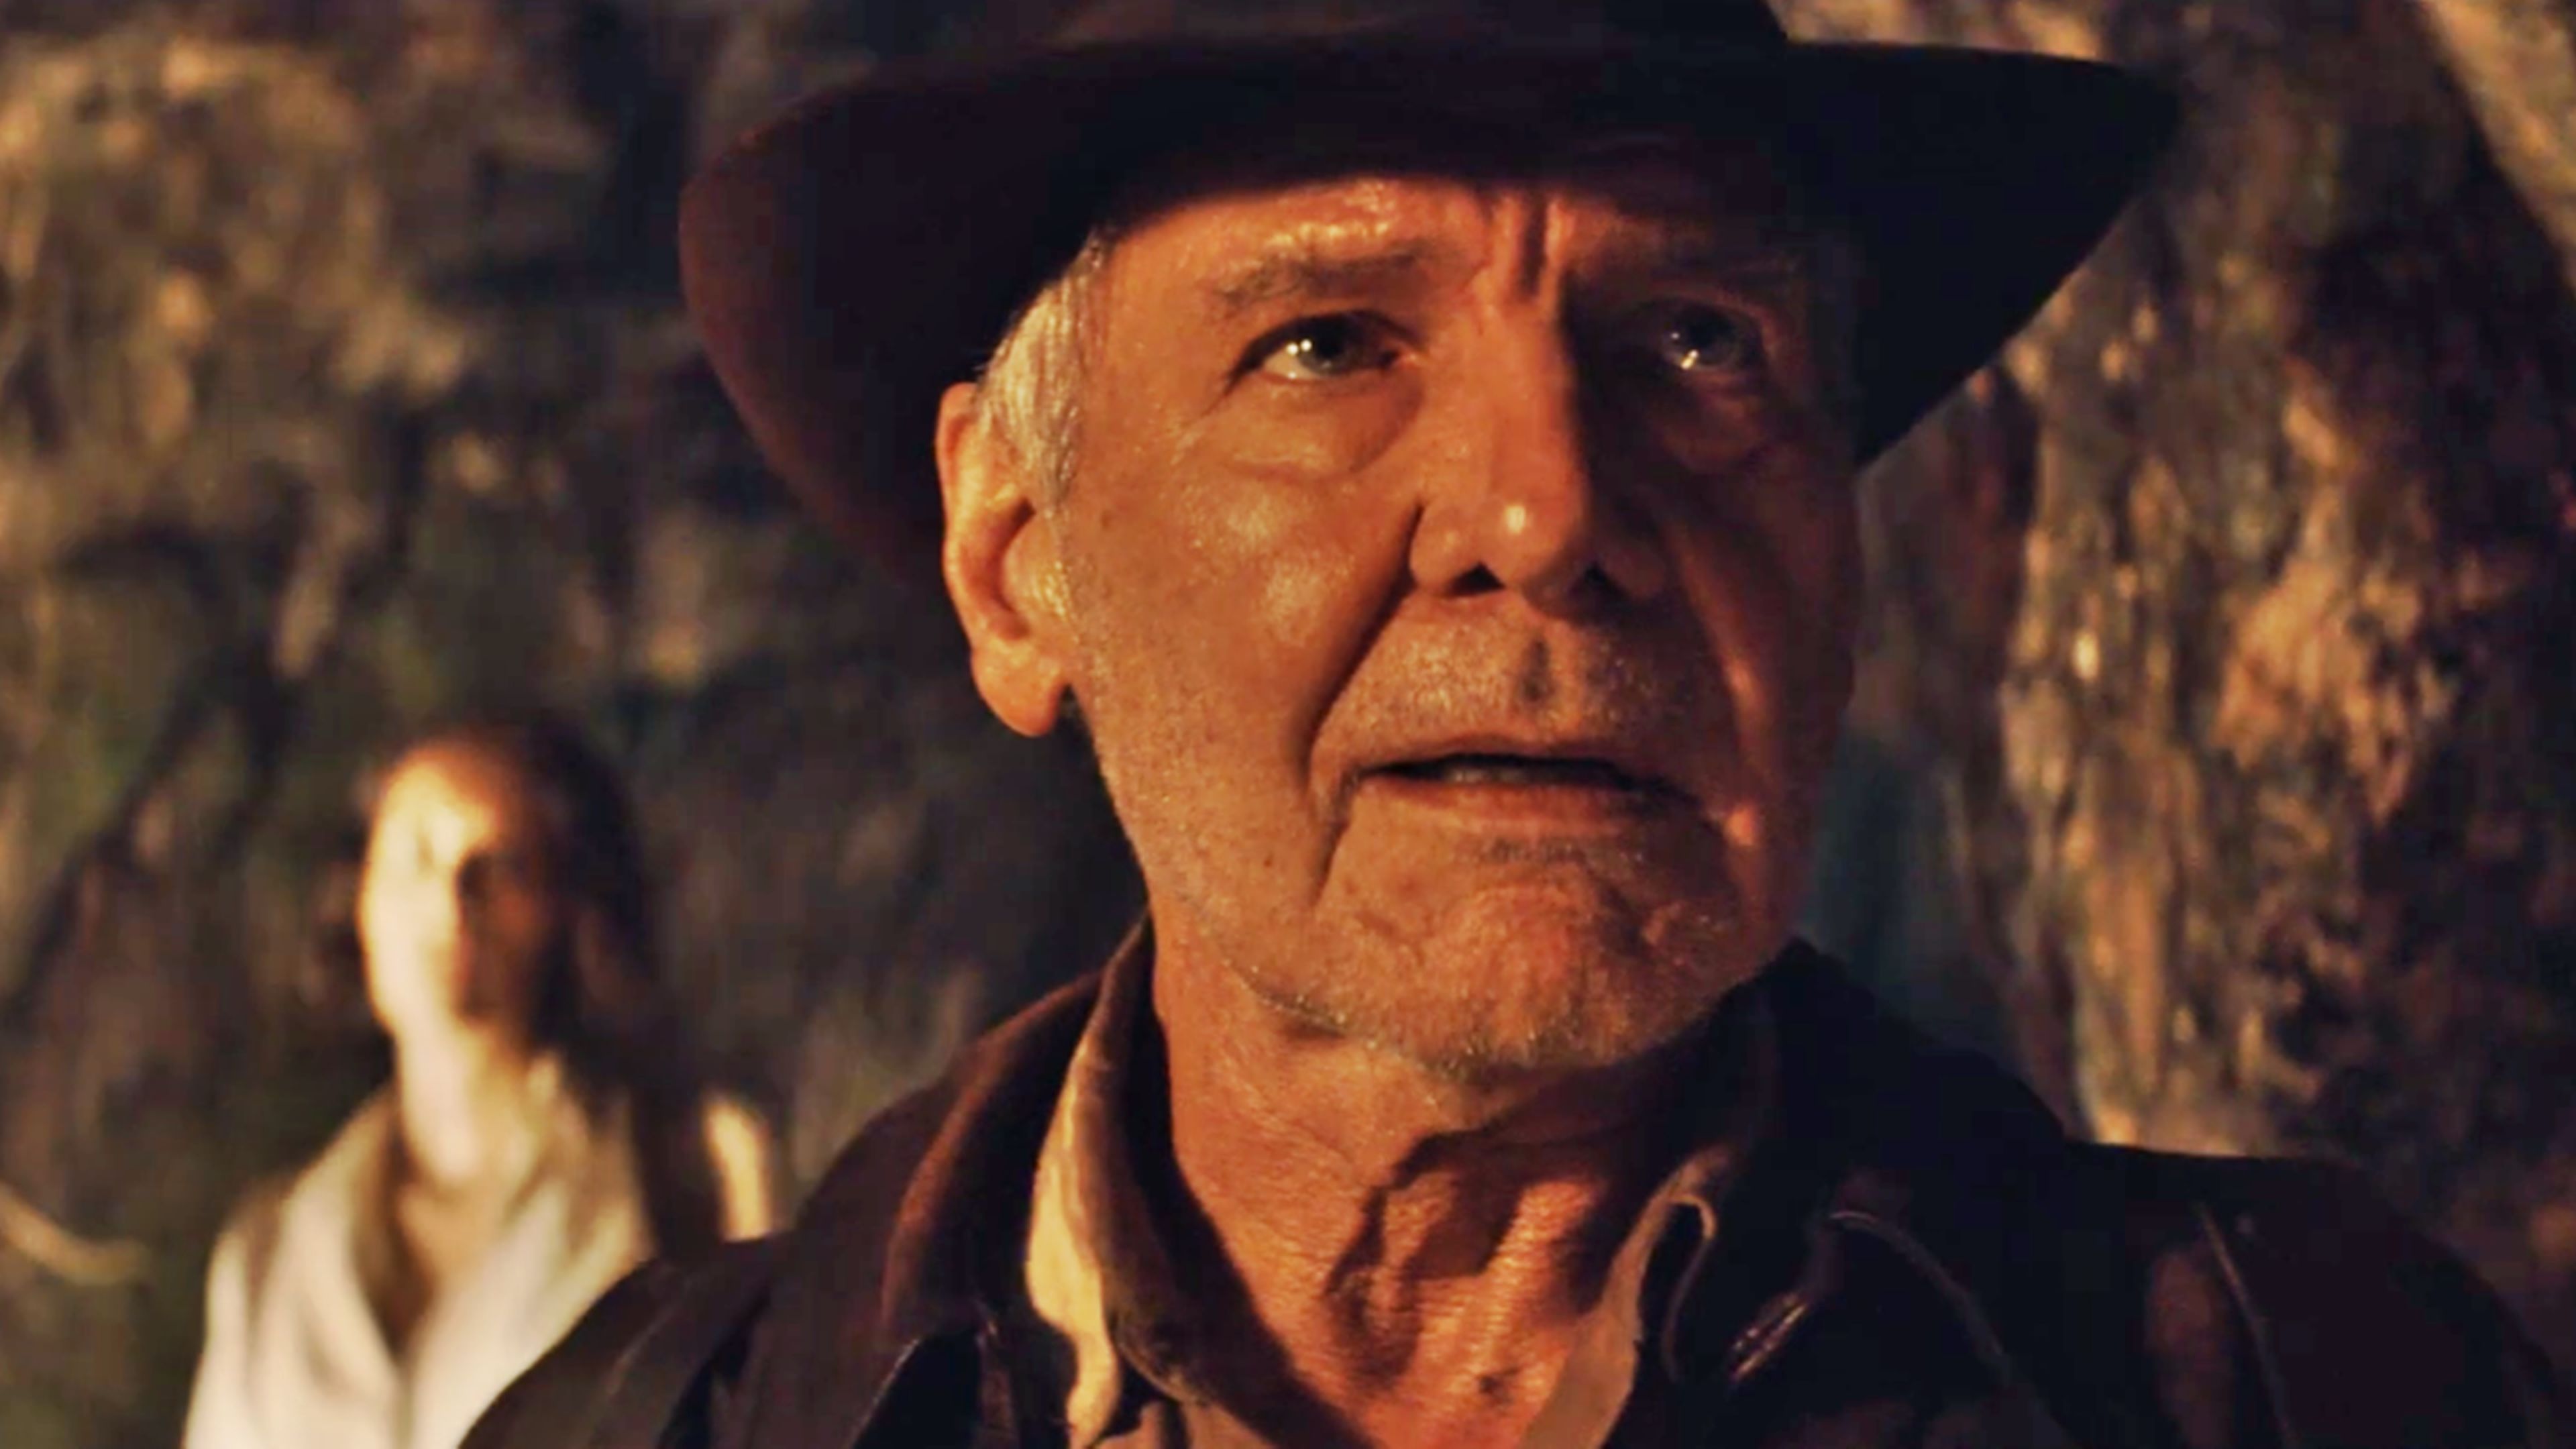 Indiana Jones y el Dial del Destino